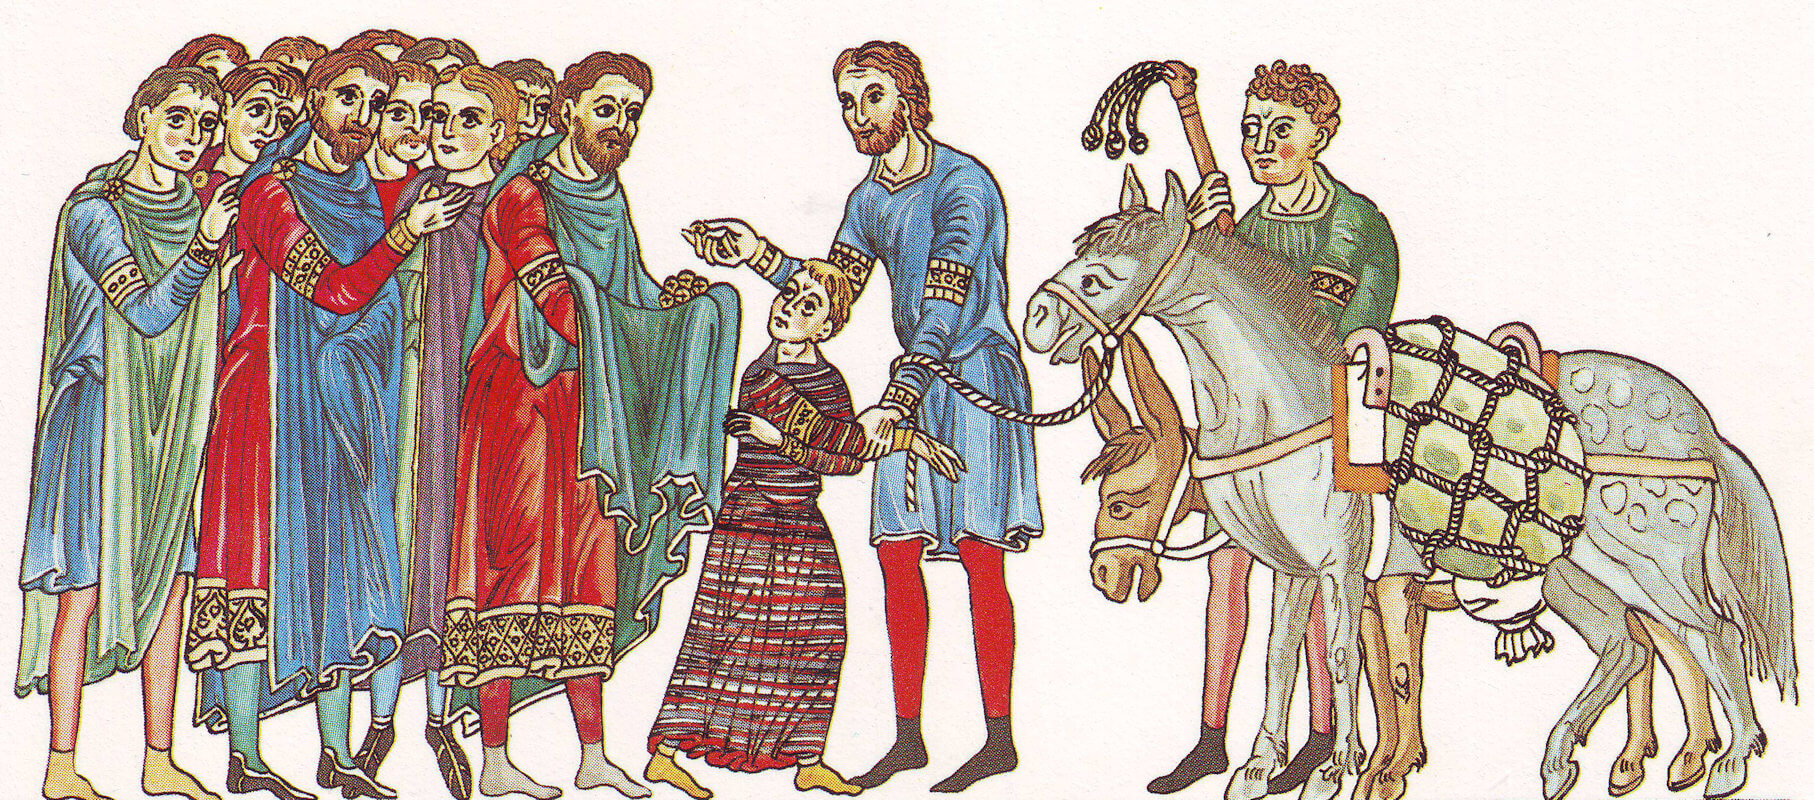 Buchmalerei: Josef wird von seinen Brüdern nach Ägypten verkauft, um 1180, aus dem „Hortus deliciarum” der Herrad von Landsberg